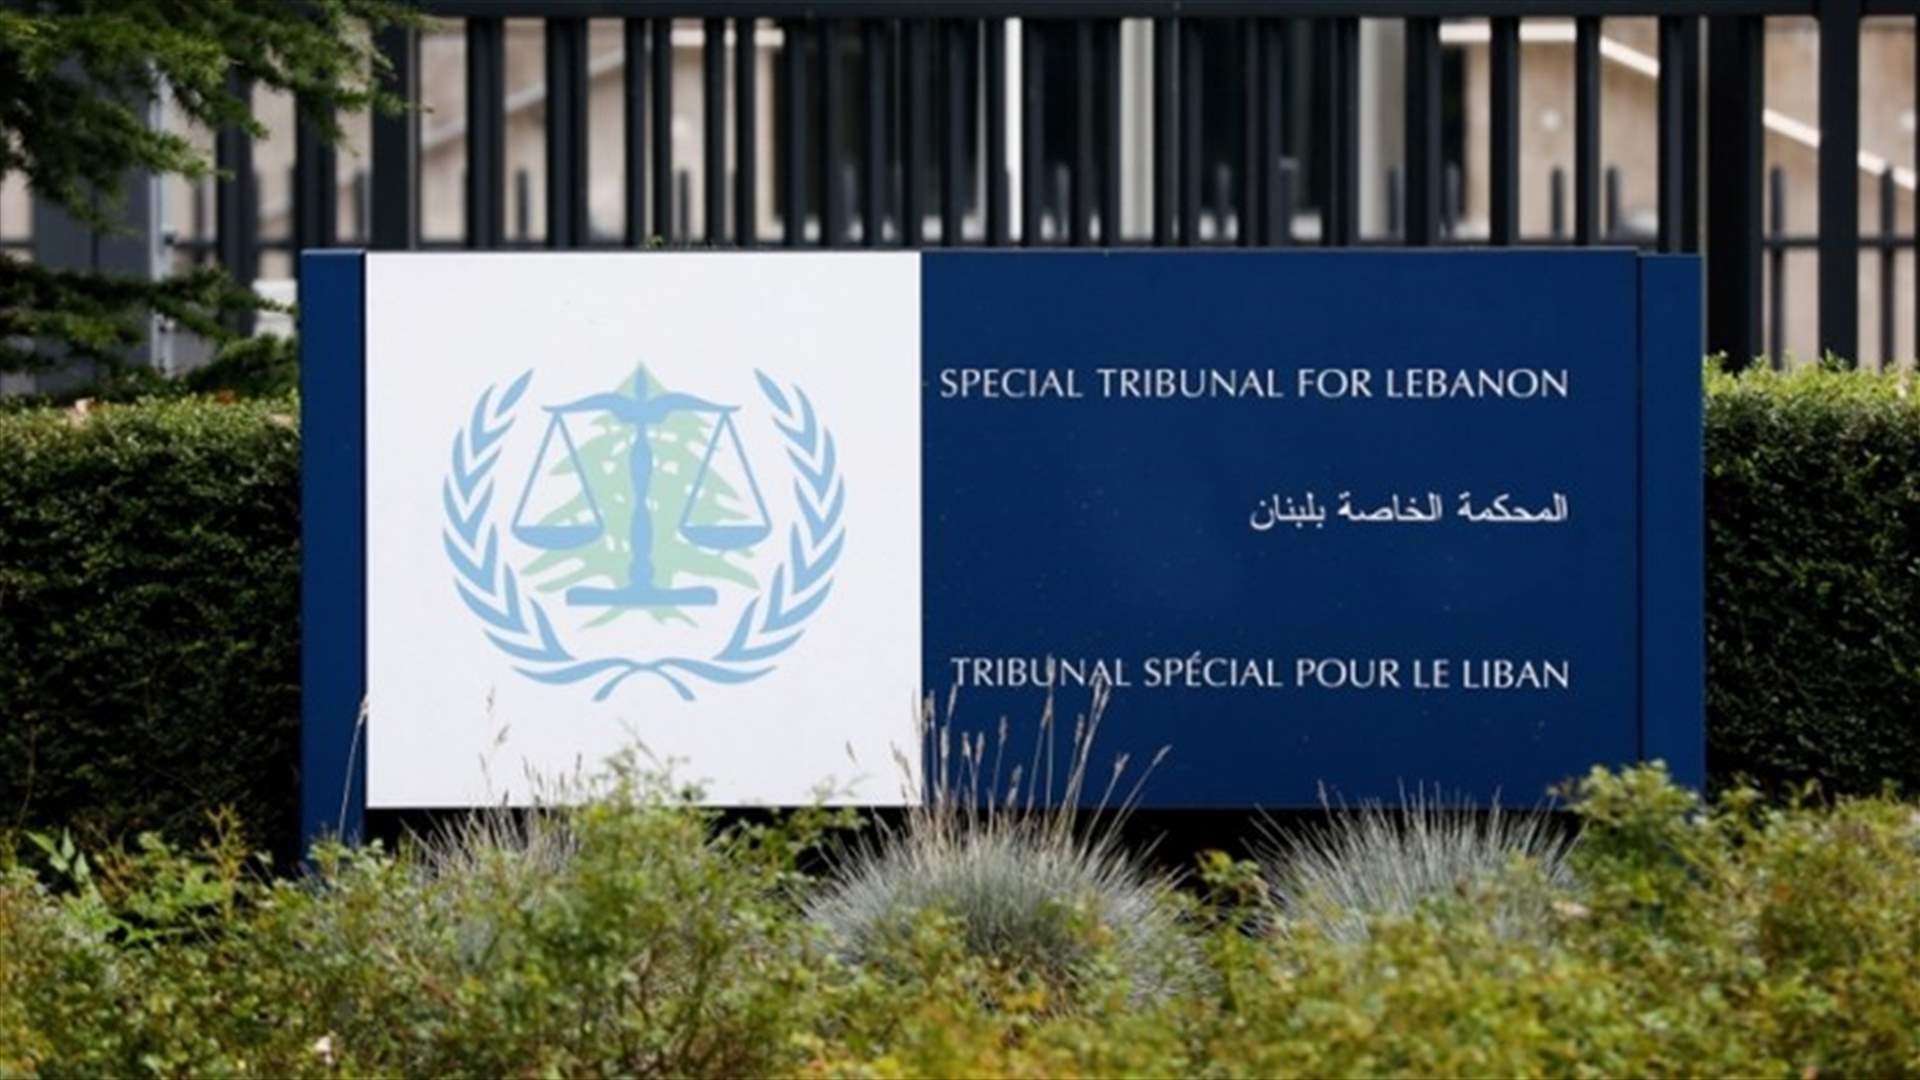 المحكمة الدولية تعلن تاريخ الاستماع إلى المرافعات الشفهية المتعلقة بالعقوبة في قضية عياش وآخرين